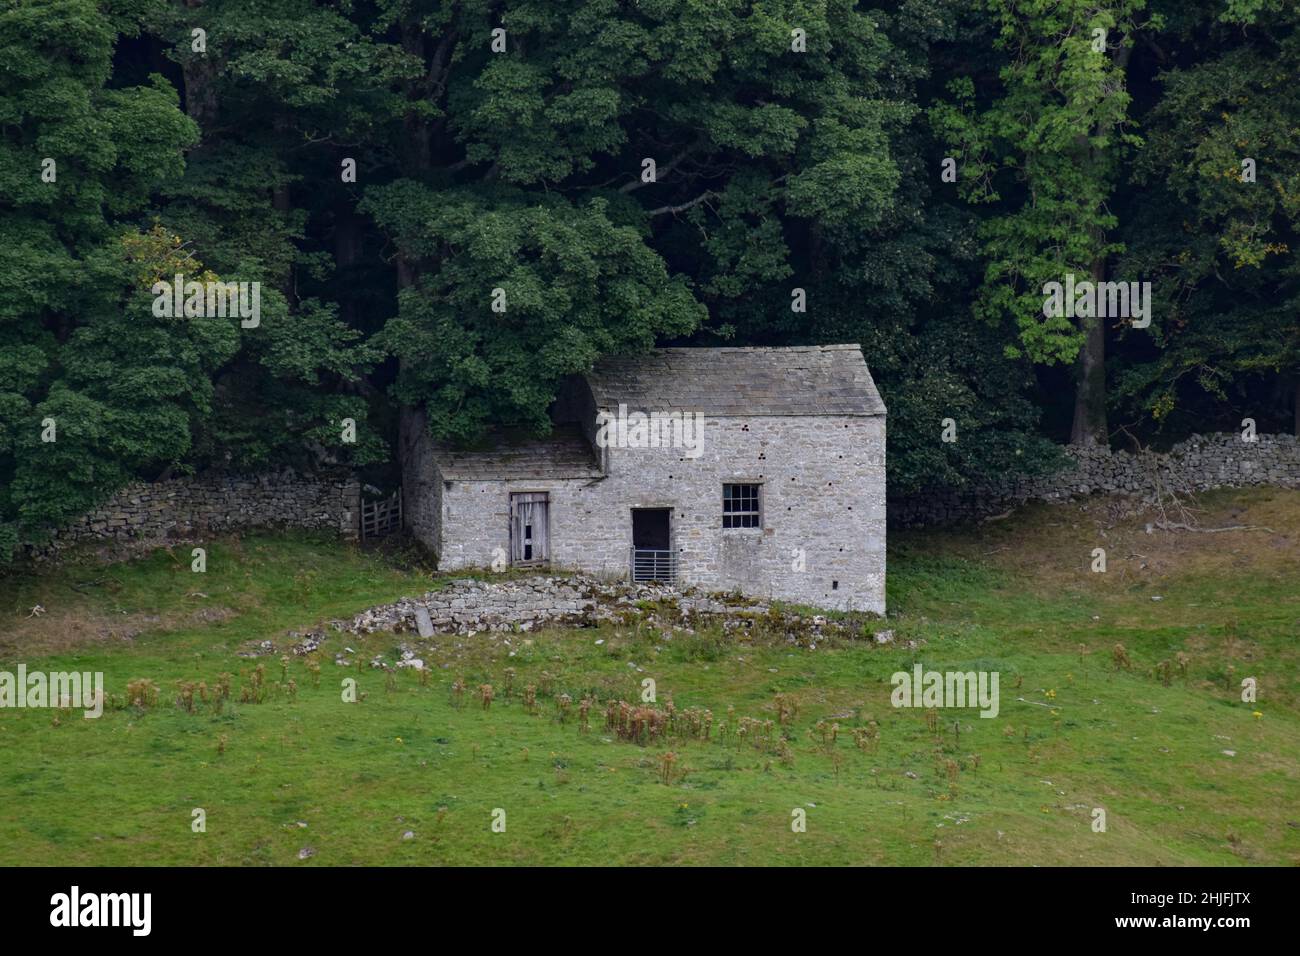 Abandoned cottage set against woodland Stock Photo